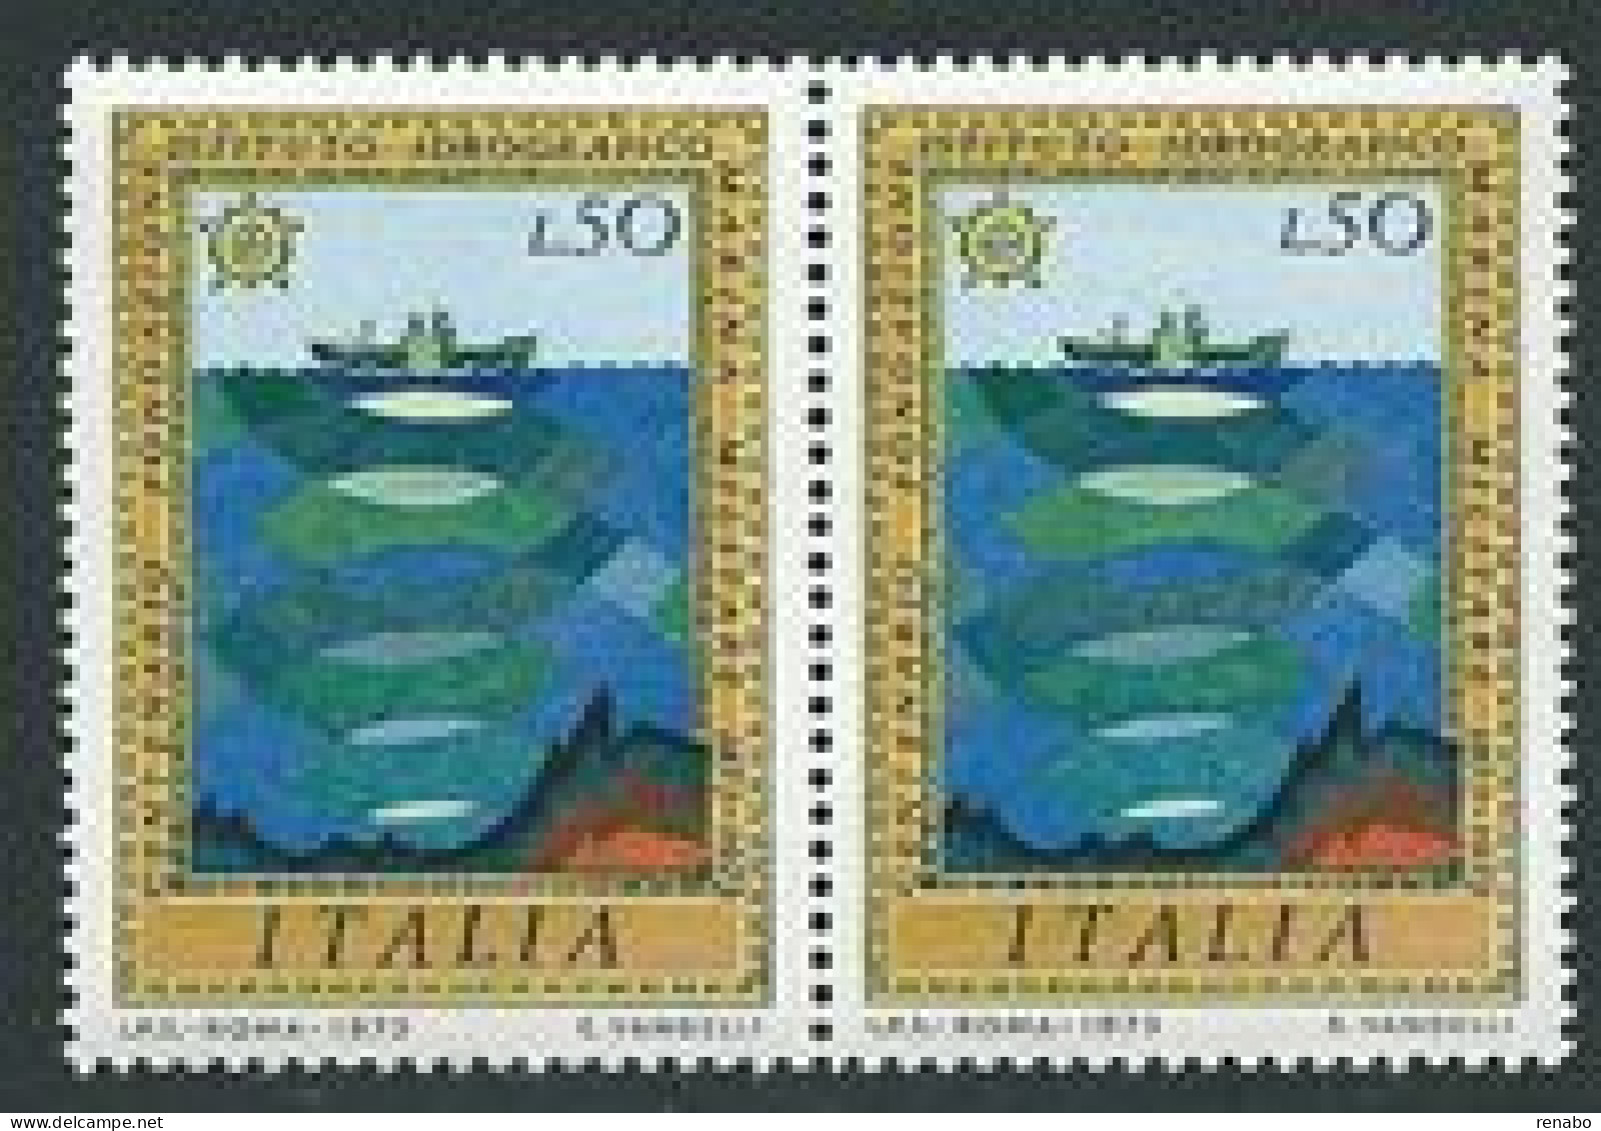 Italia 1973; Istituto Idrografico Della Marina Militare. Coppia. - 1971-80: Neufs